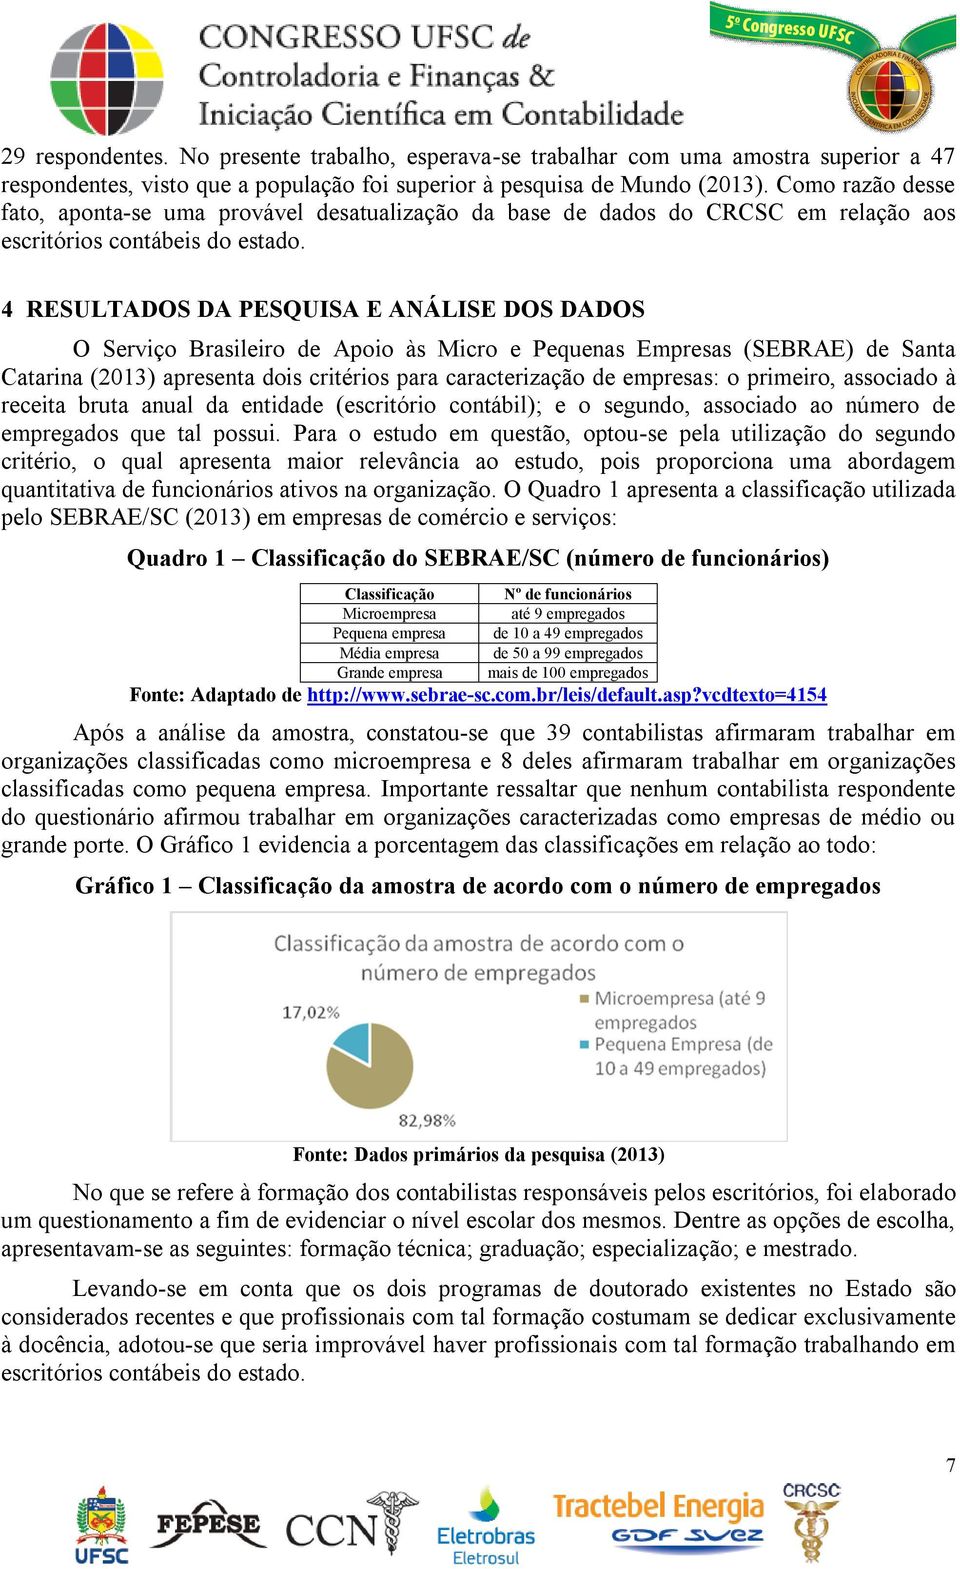 4 RESULTADOS DA PESQUISA E ANÁLISE DOS DADOS O Serviço Brasileiro de Apoio às Micro e Pequenas Empresas (SEBRAE) de Santa Catarina (2013) apresenta dois critérios para caracterização de empresas: o